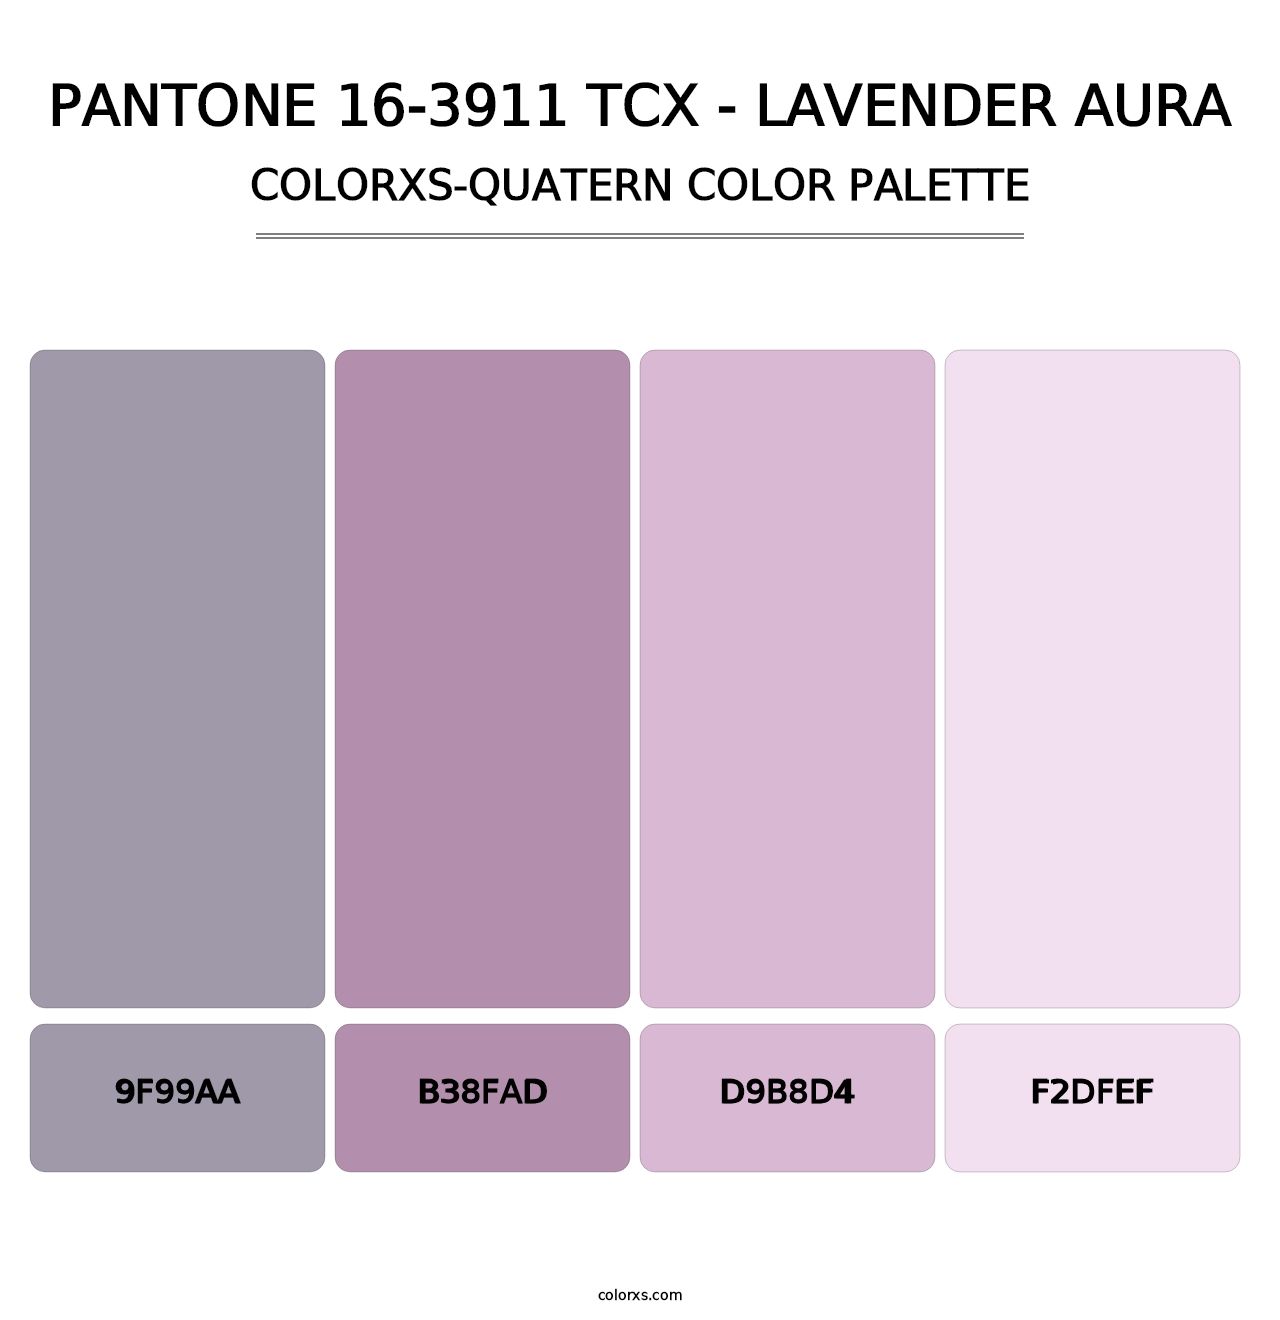 PANTONE 16-3911 TCX - Lavender Aura - Colorxs Quatern Palette